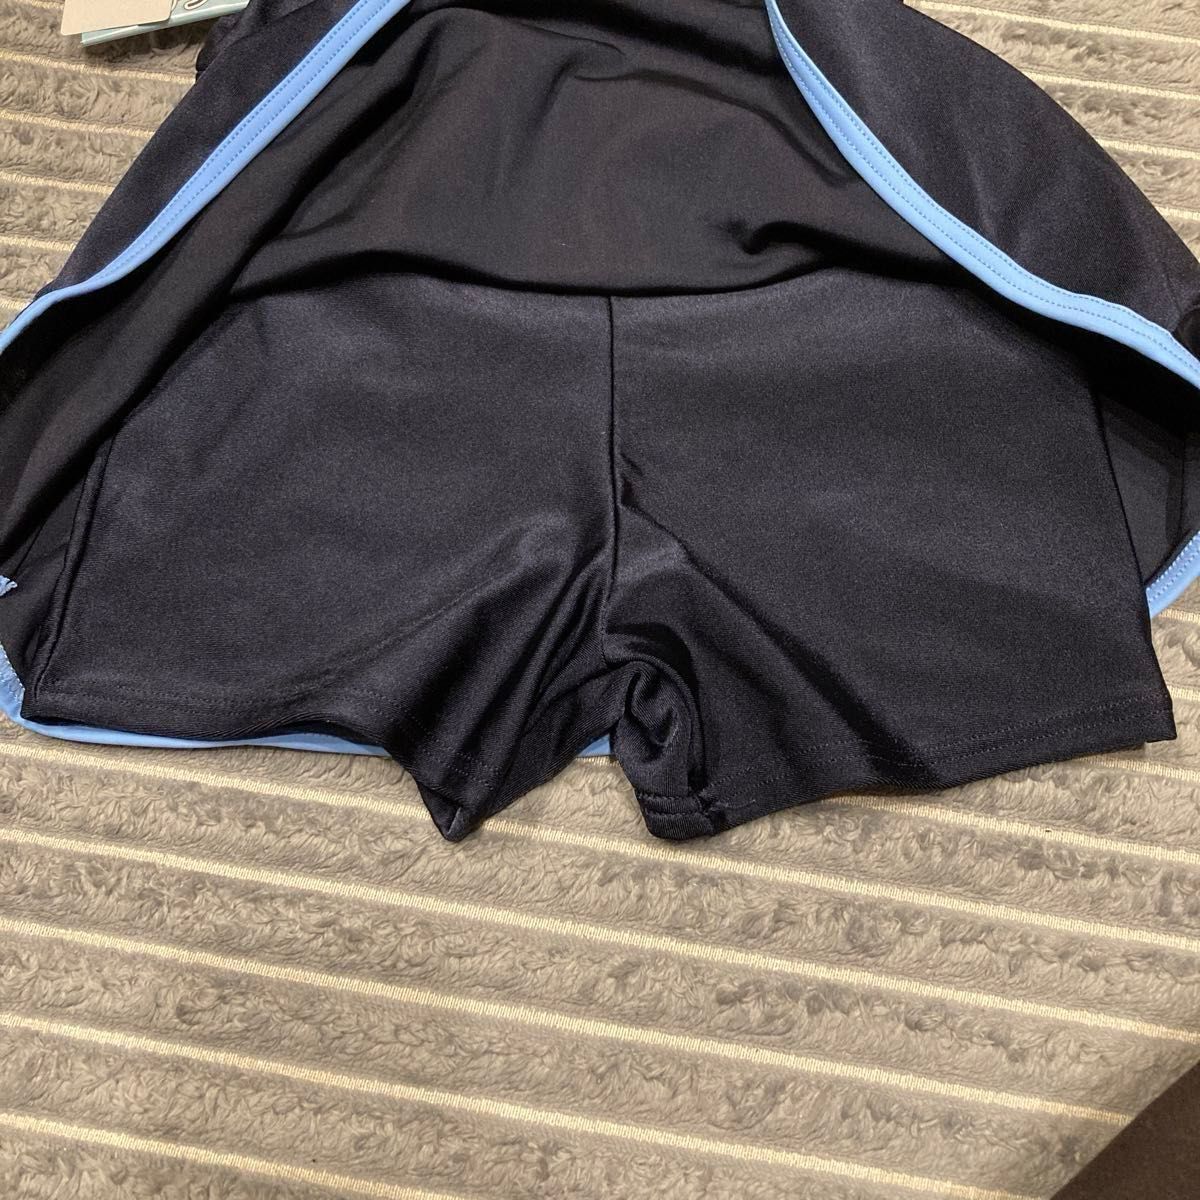 ワンピース型スクール水着 女の子 140cm 水泳 小学生 学校 スカート 紺  ネイビー スカートタイプ スイミング  かわいい